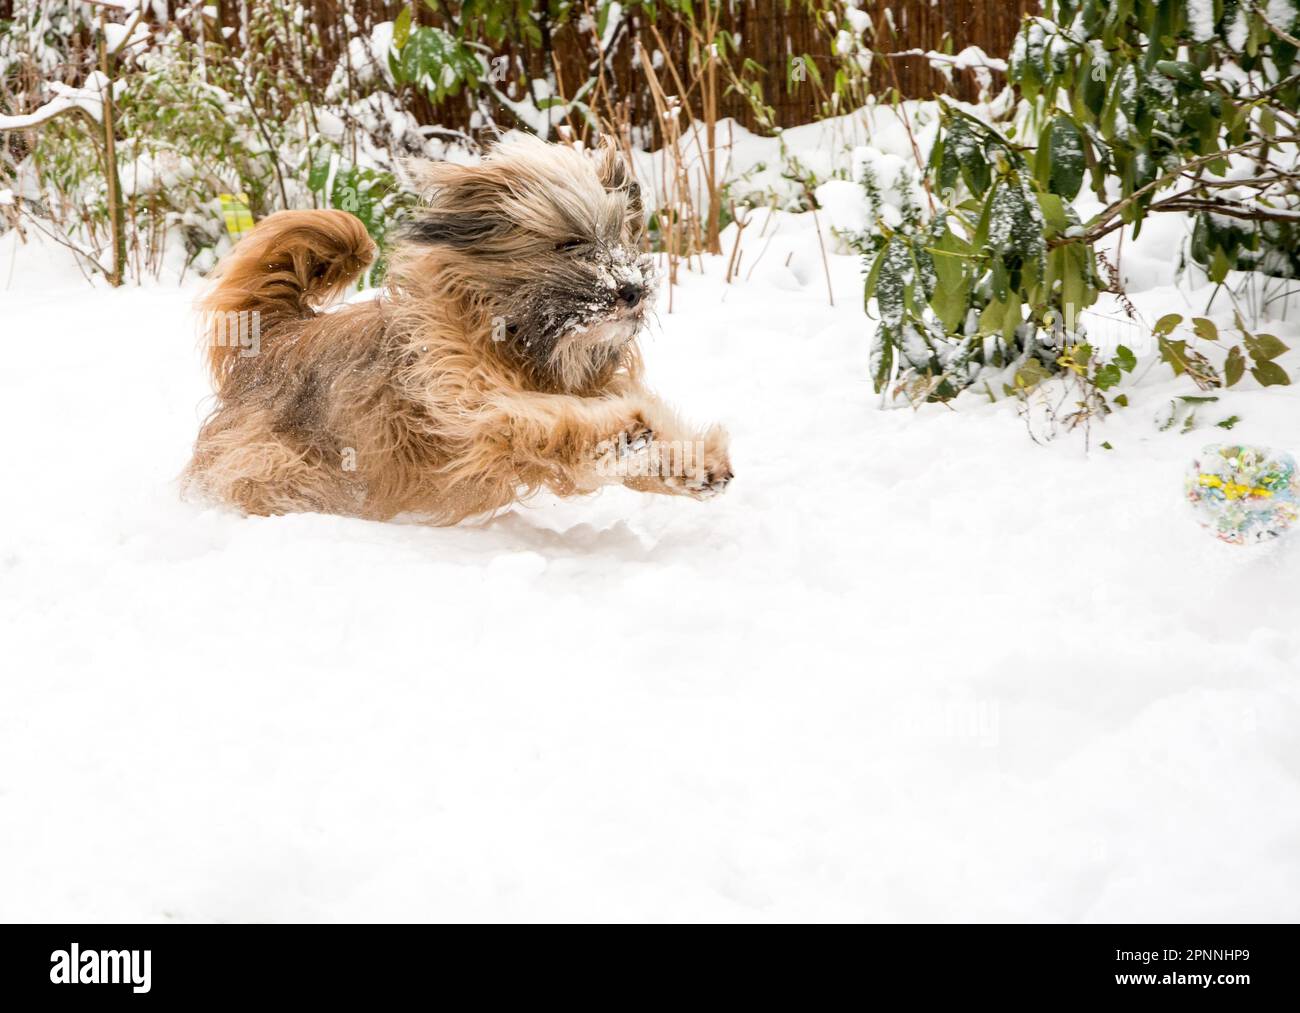 Hundebeweglichkeit – tibetanischer Terrier, der im Schnee läuft, springt und einen Ball fängt Stockfoto